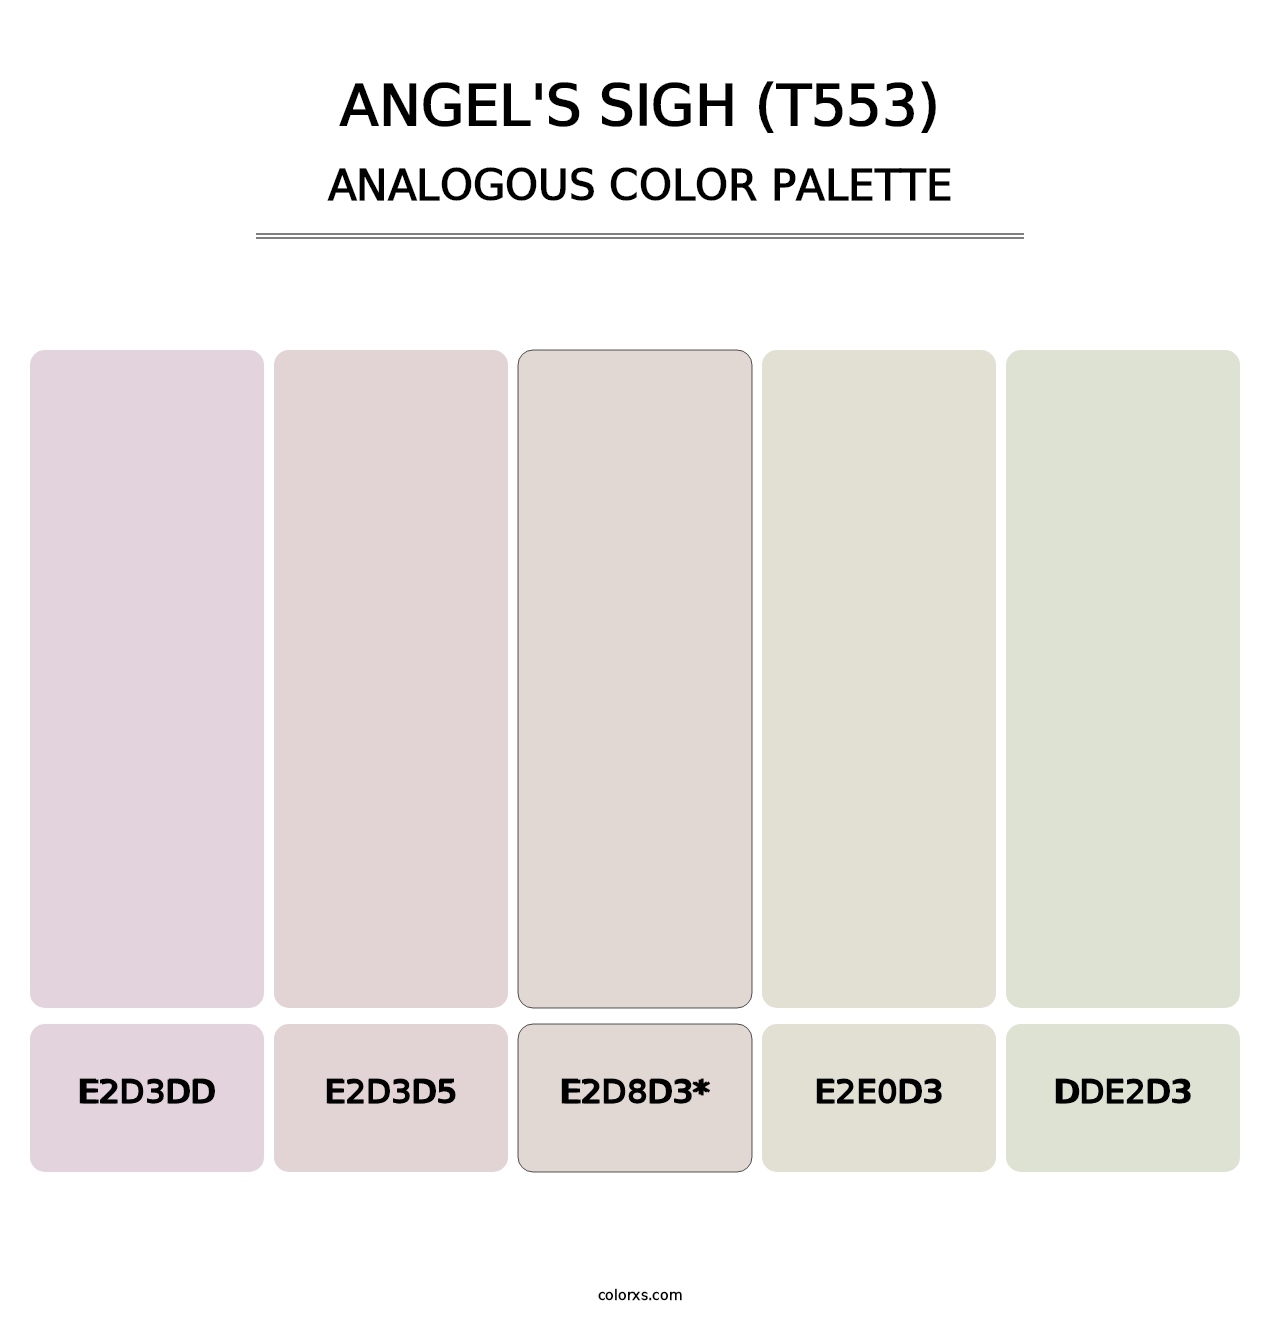 Angel's Sigh (T553) - Analogous Color Palette